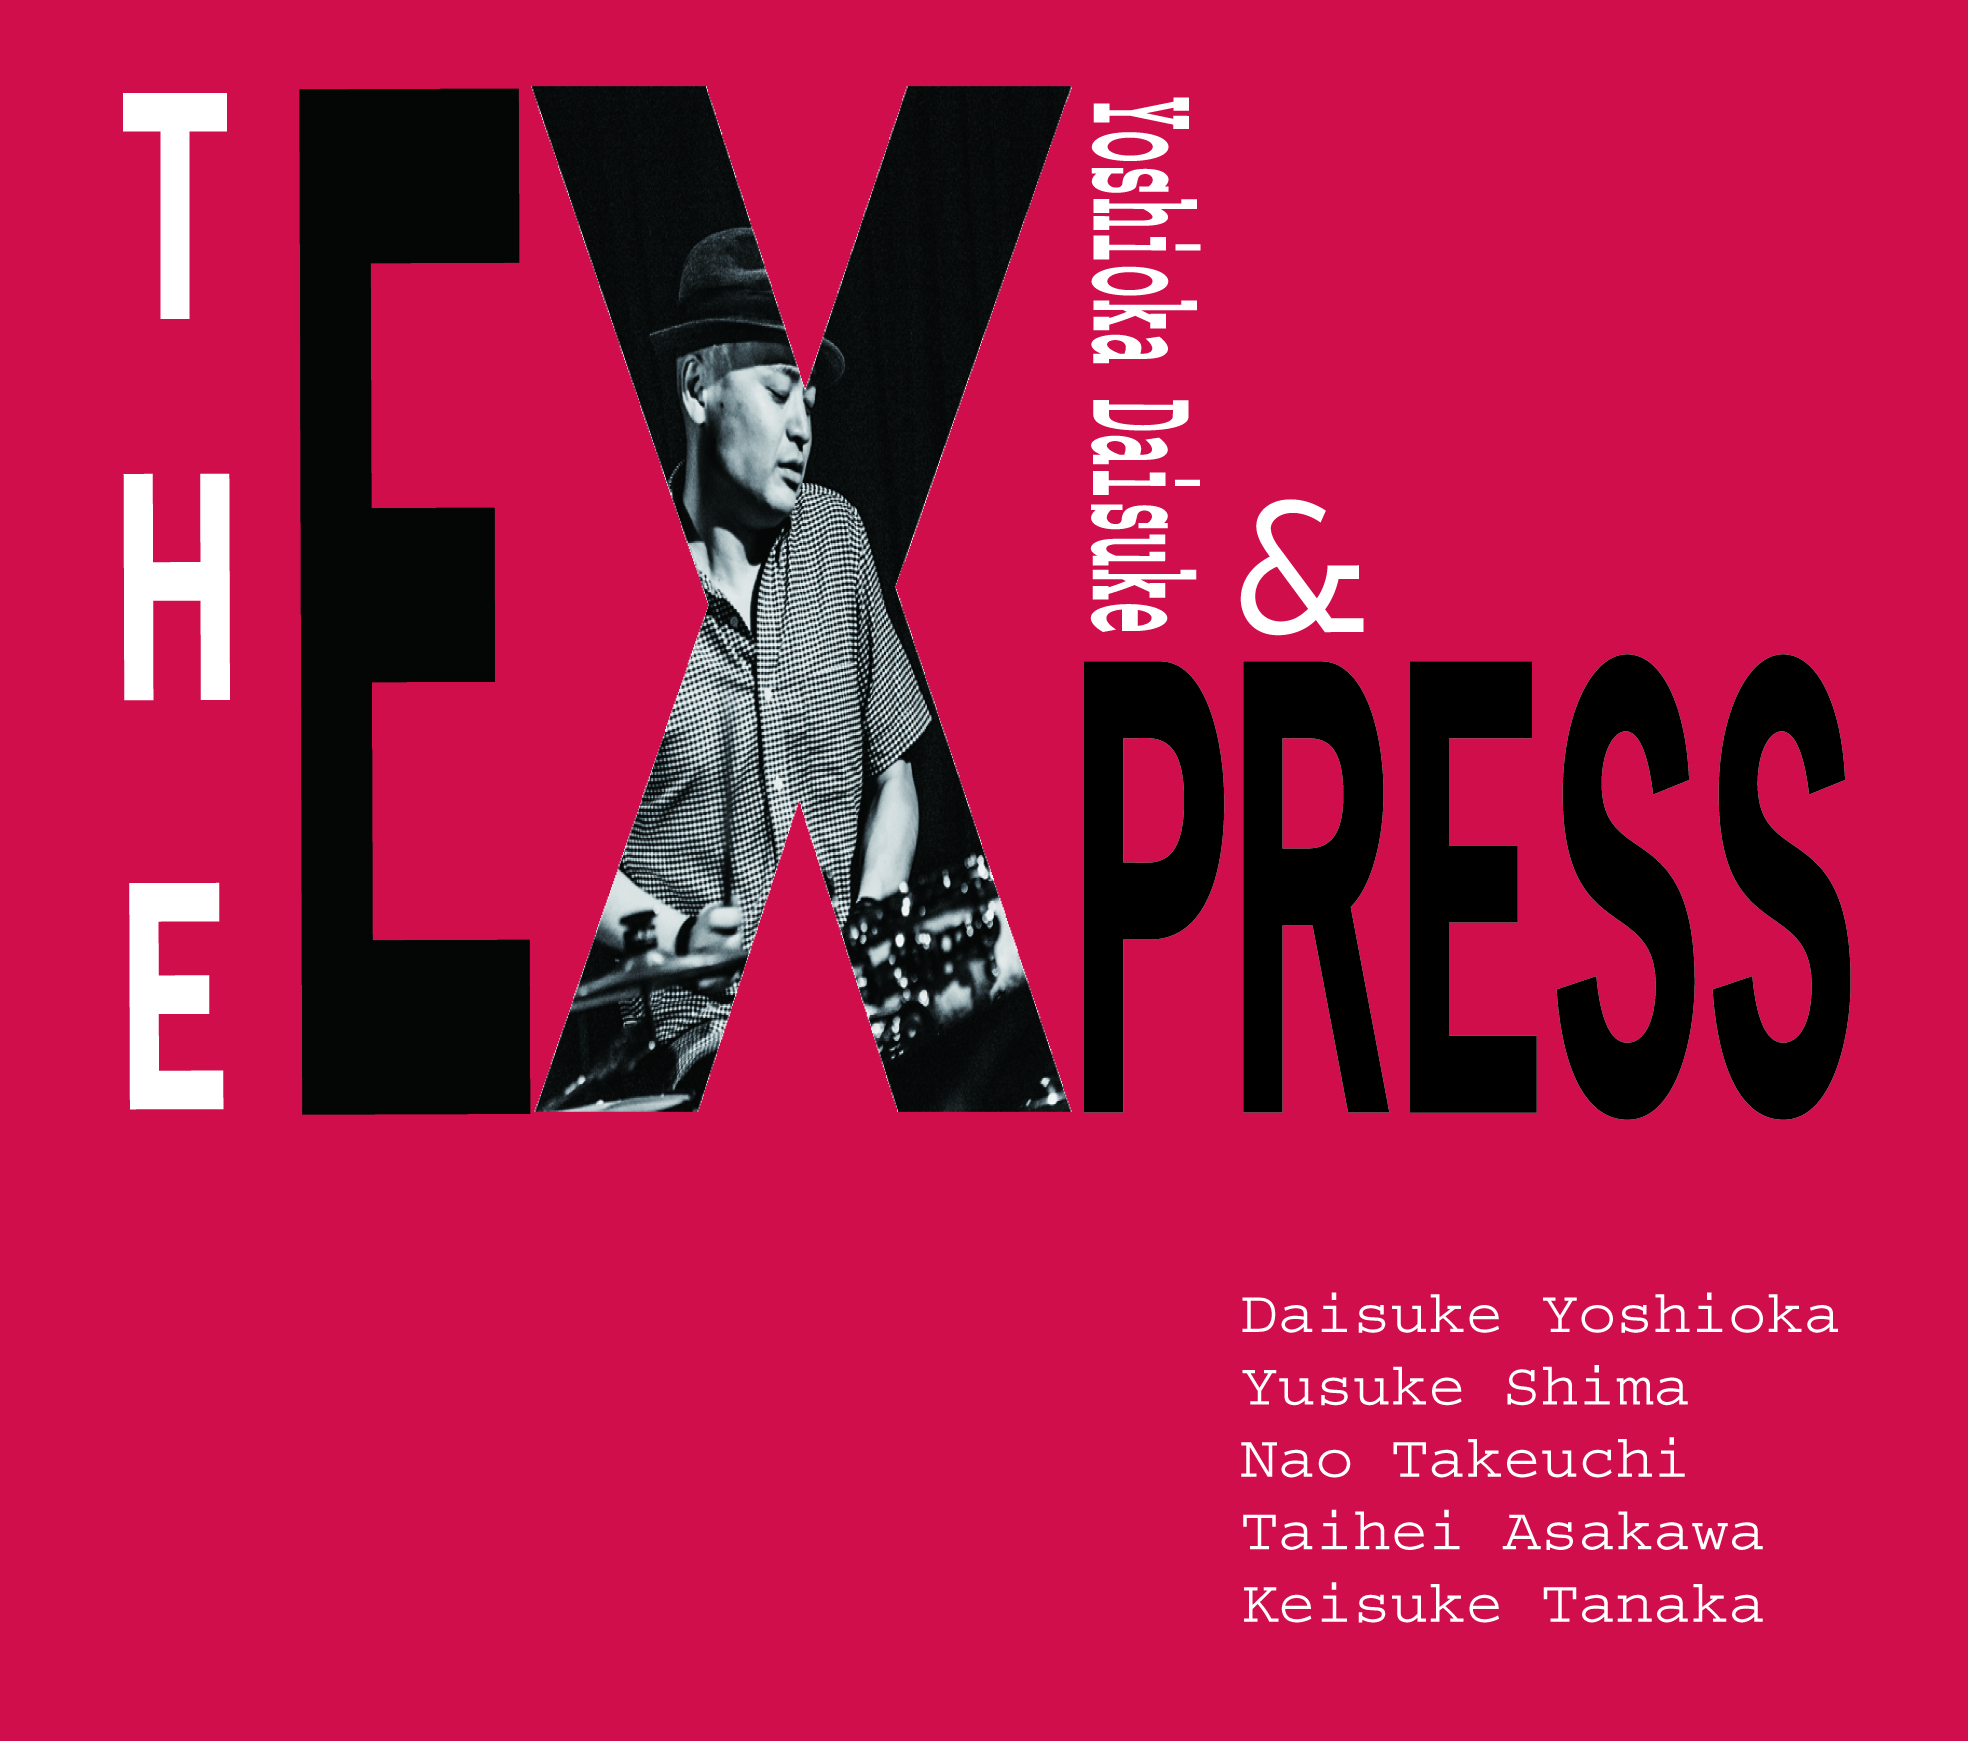 吉岡大輔 & the Express